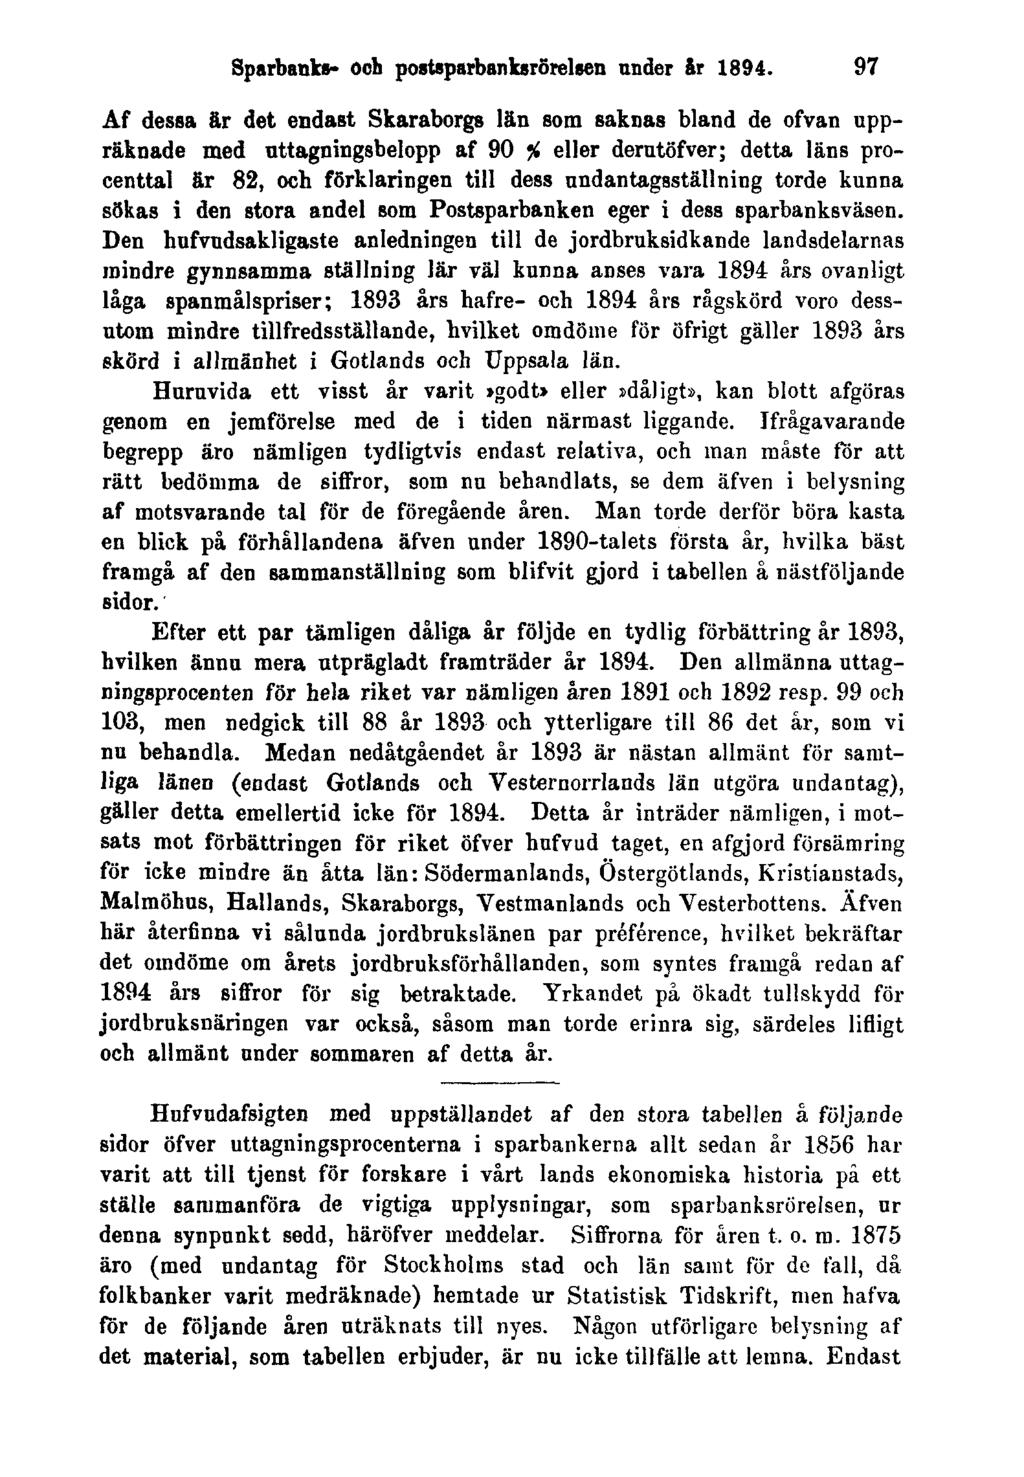 Sparbanks- och postsparbanksrörelsen under år 1894.